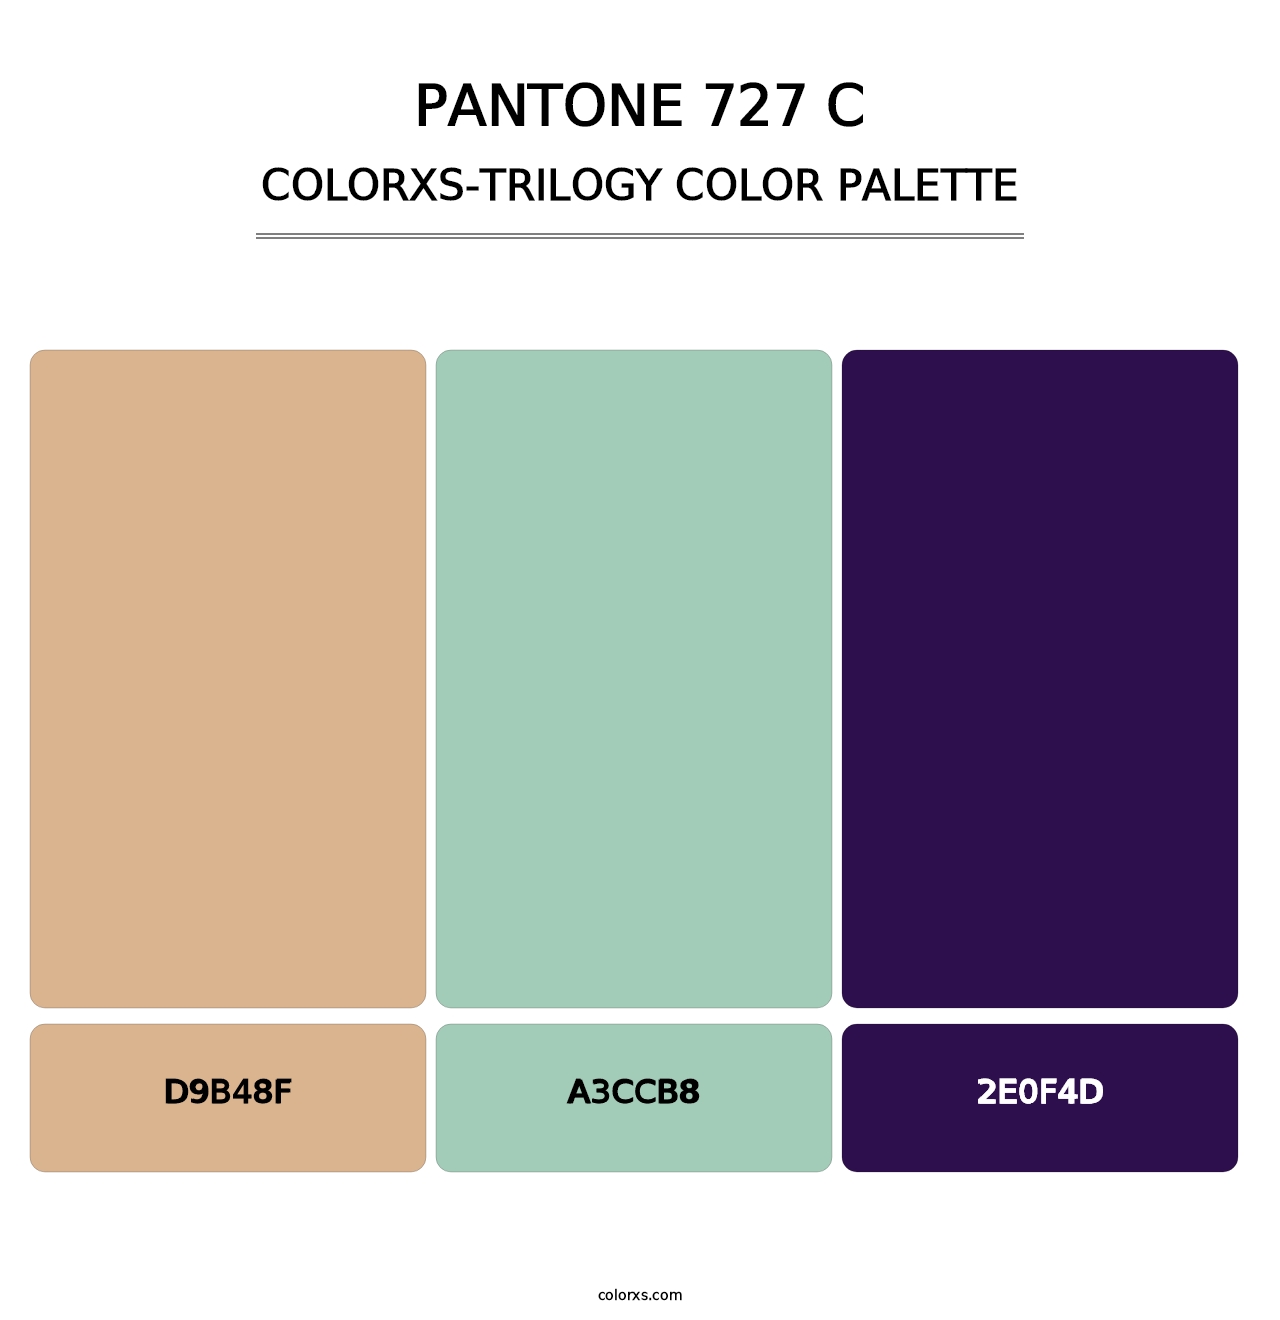 PANTONE 727 C - Colorxs Trilogy Palette